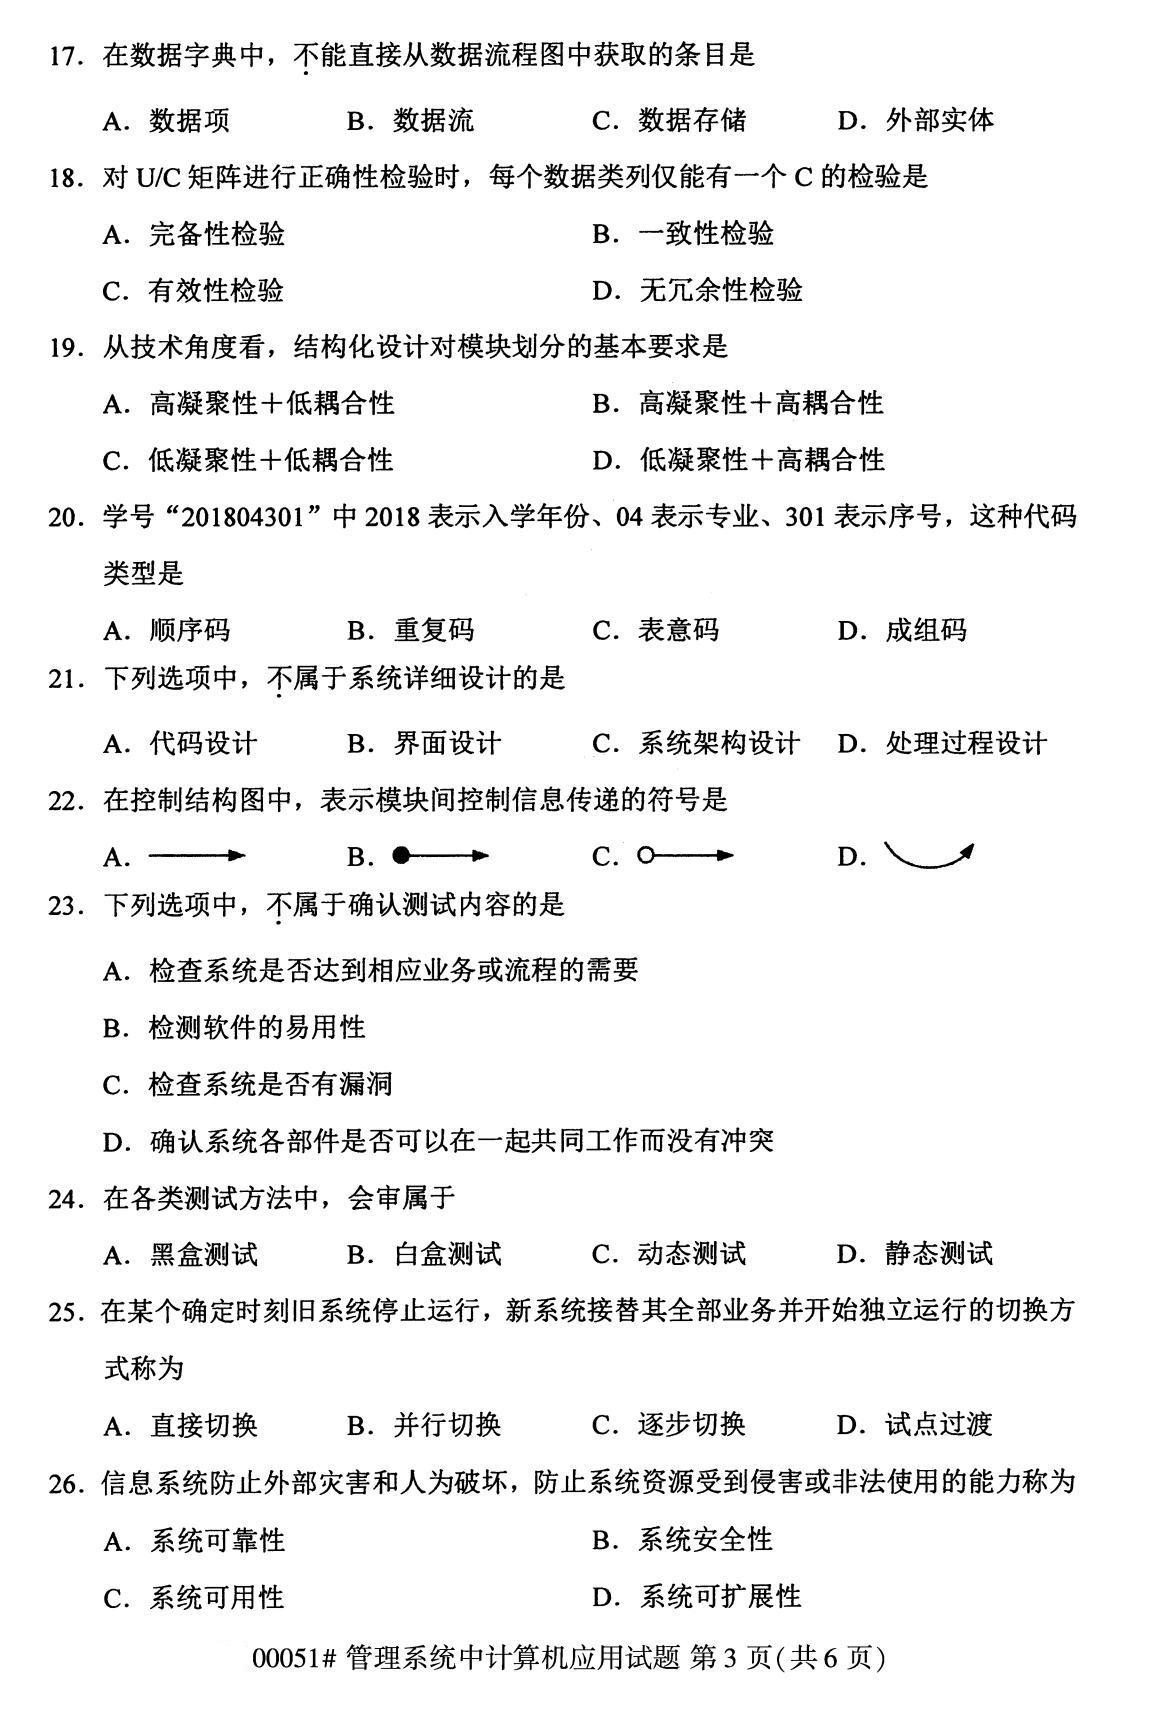 2020年8月辽宁省自学考试本科管理系统中计算机应用真题(图3)